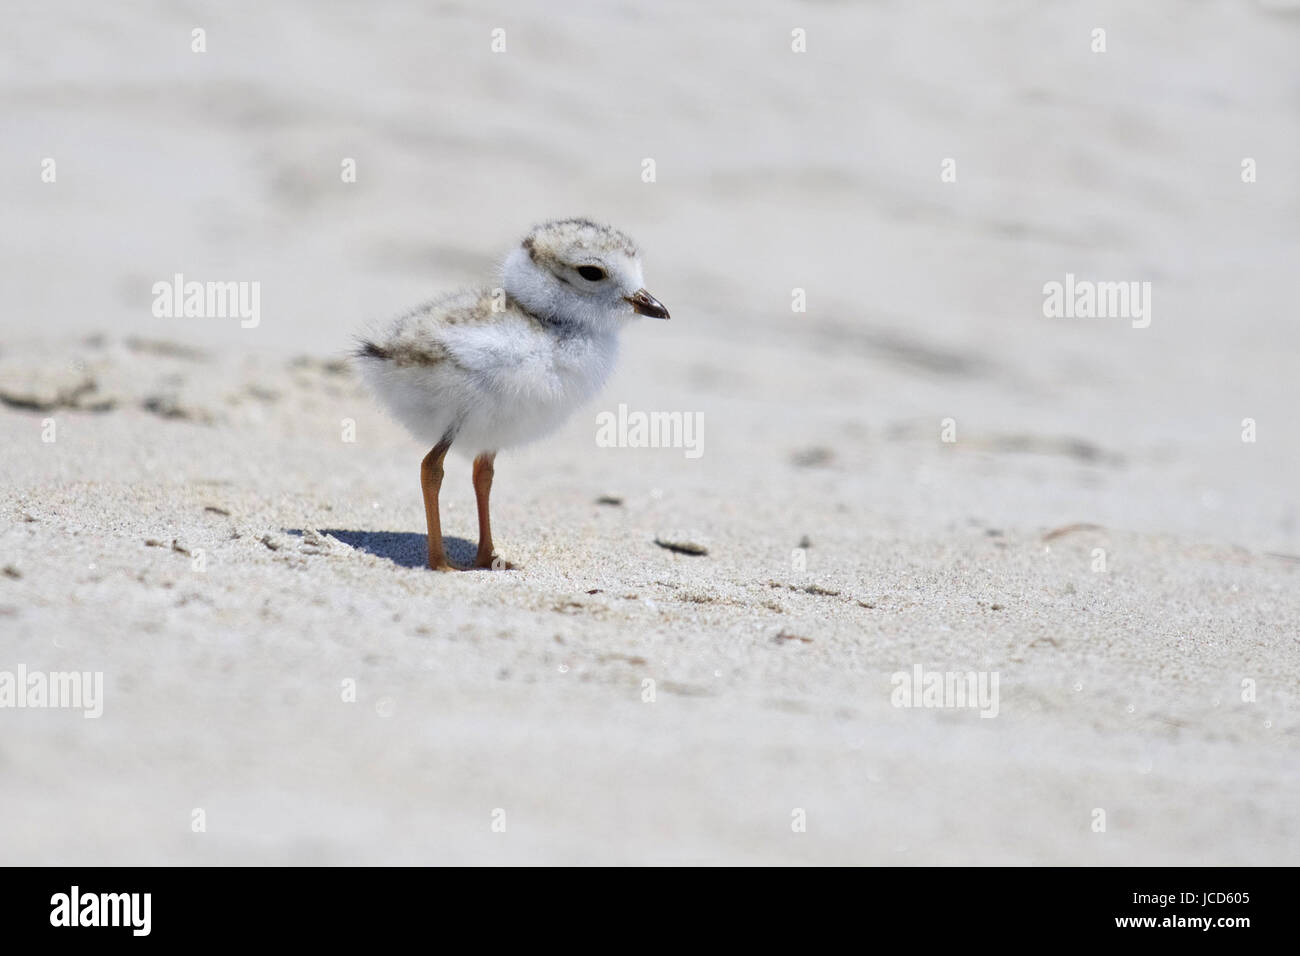 Un pluvier siffleur Charadrius melodus chick debout sur la plage, dans le Maine. Banque D'Images